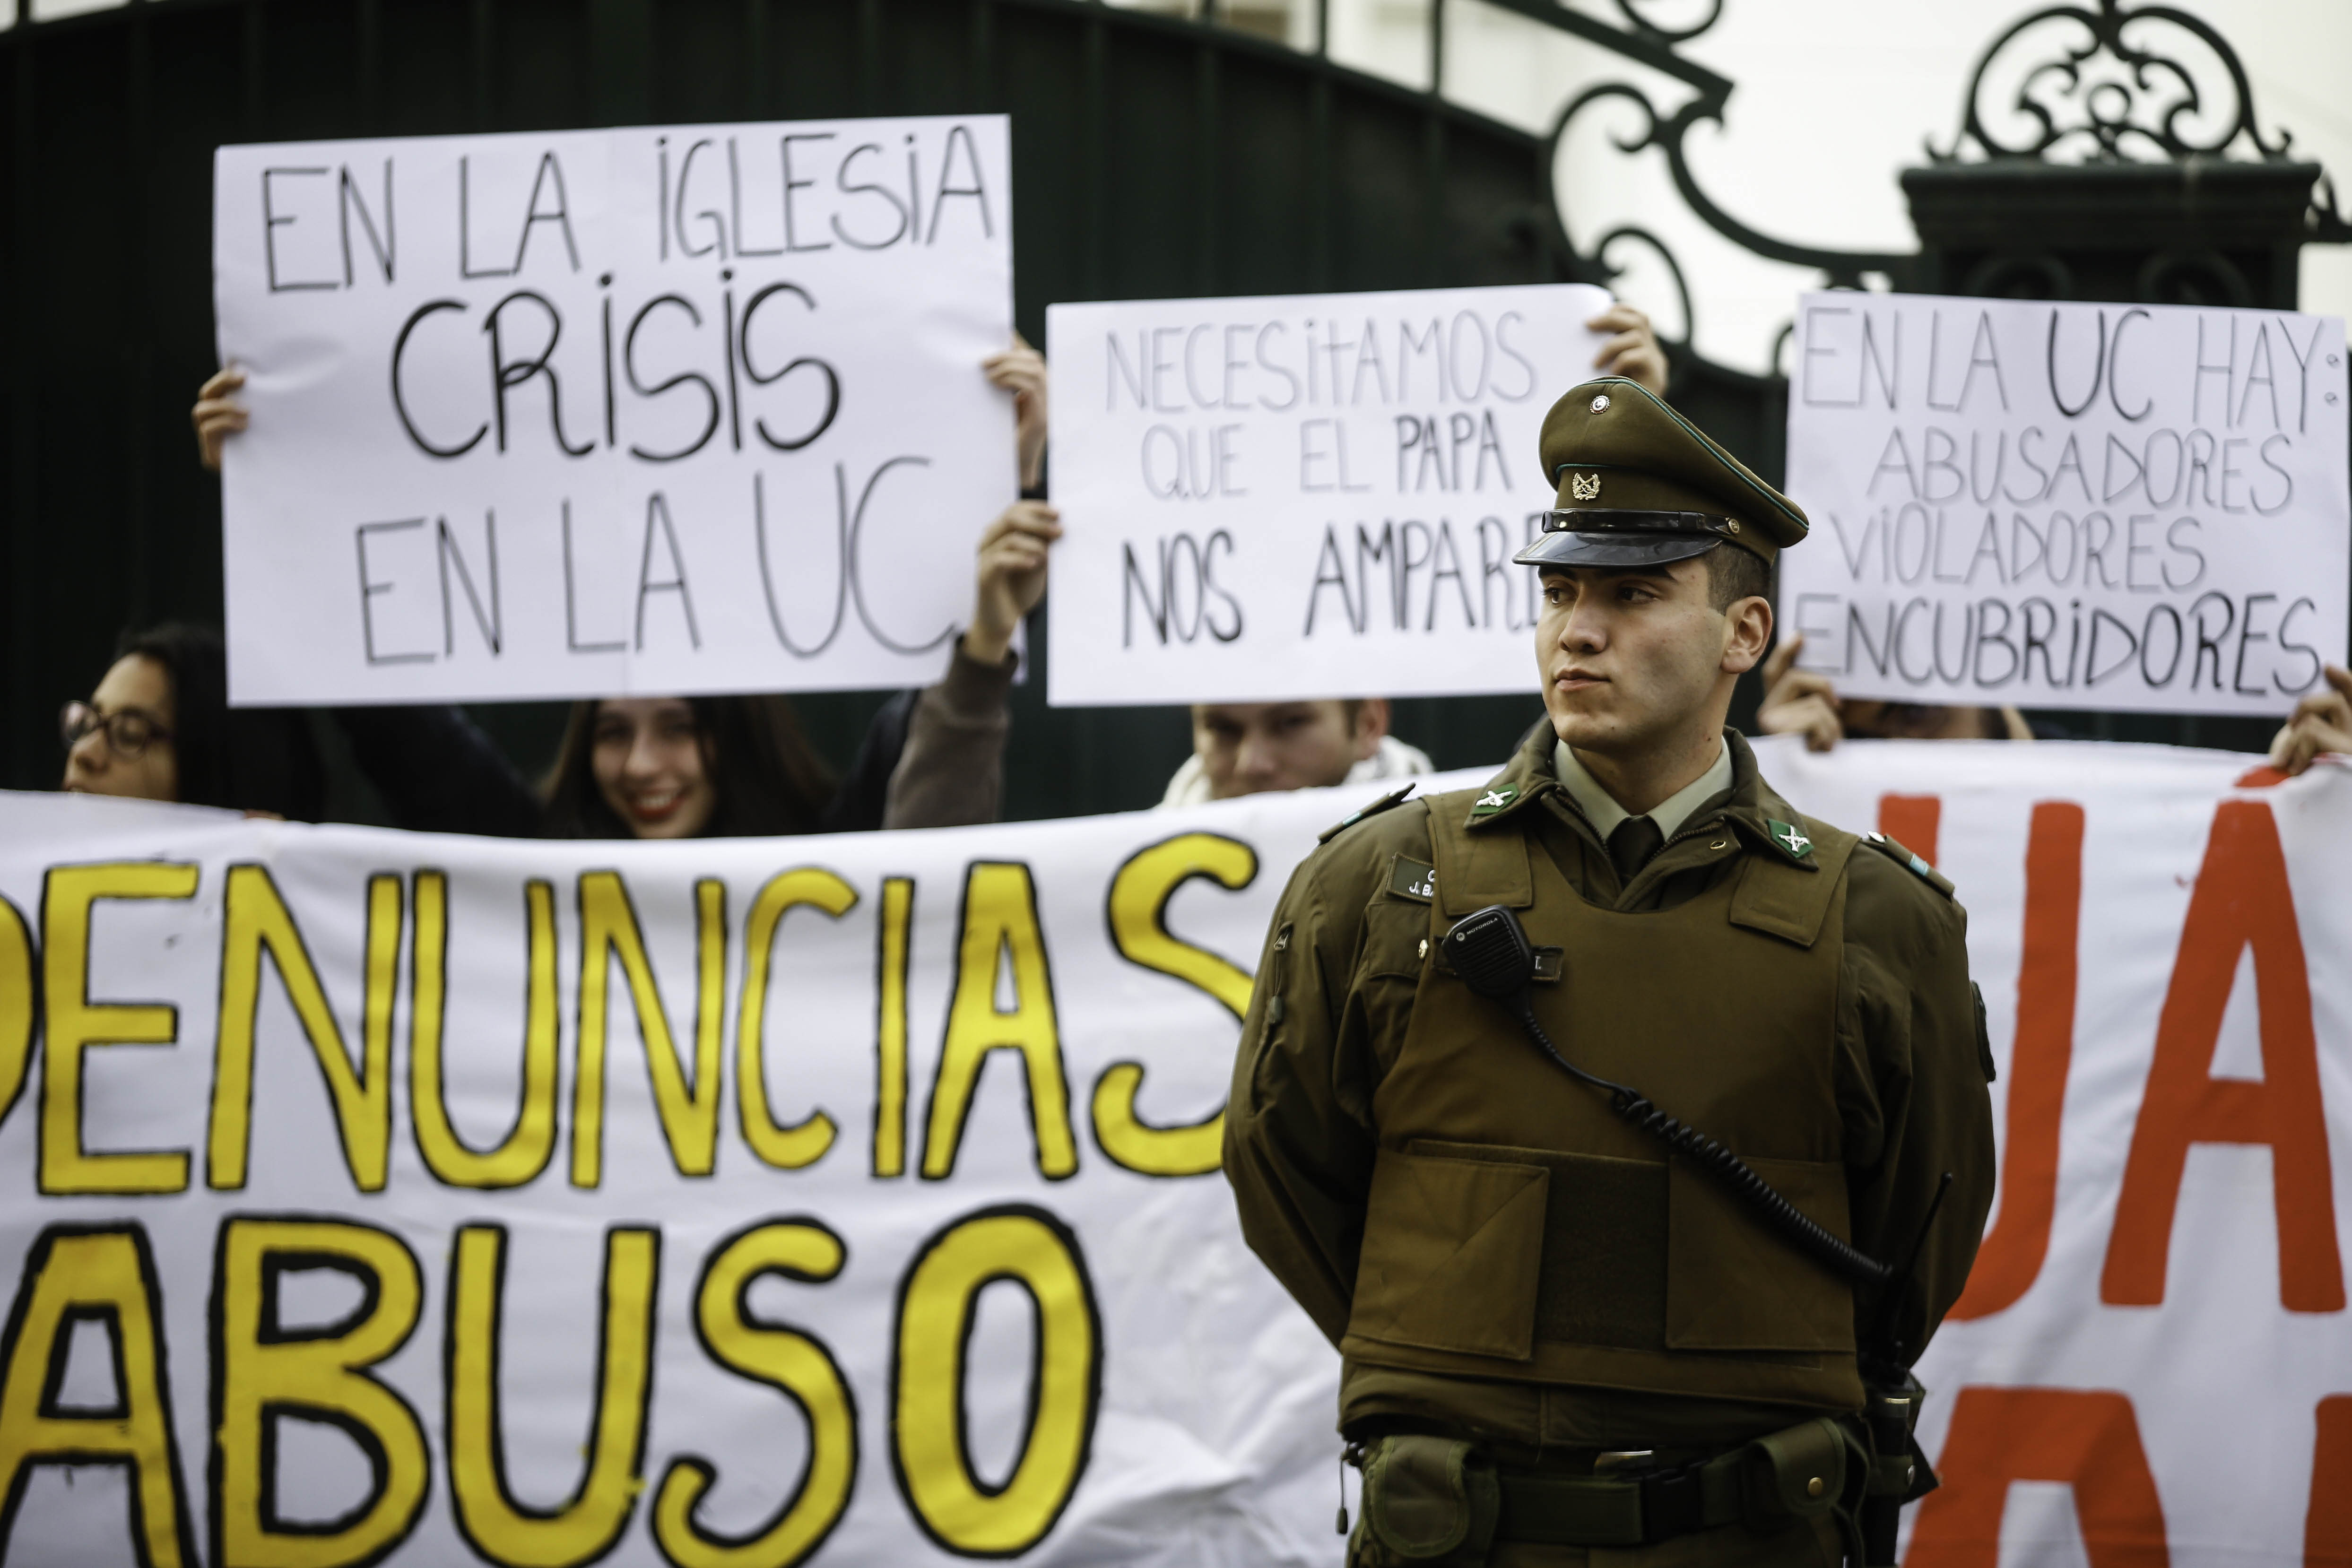 En junio un grupo jóvenes realizó una protesta por los abusos sexuales en la Universidad Católica frente a la Nunciatura Apostólica de Santiago.